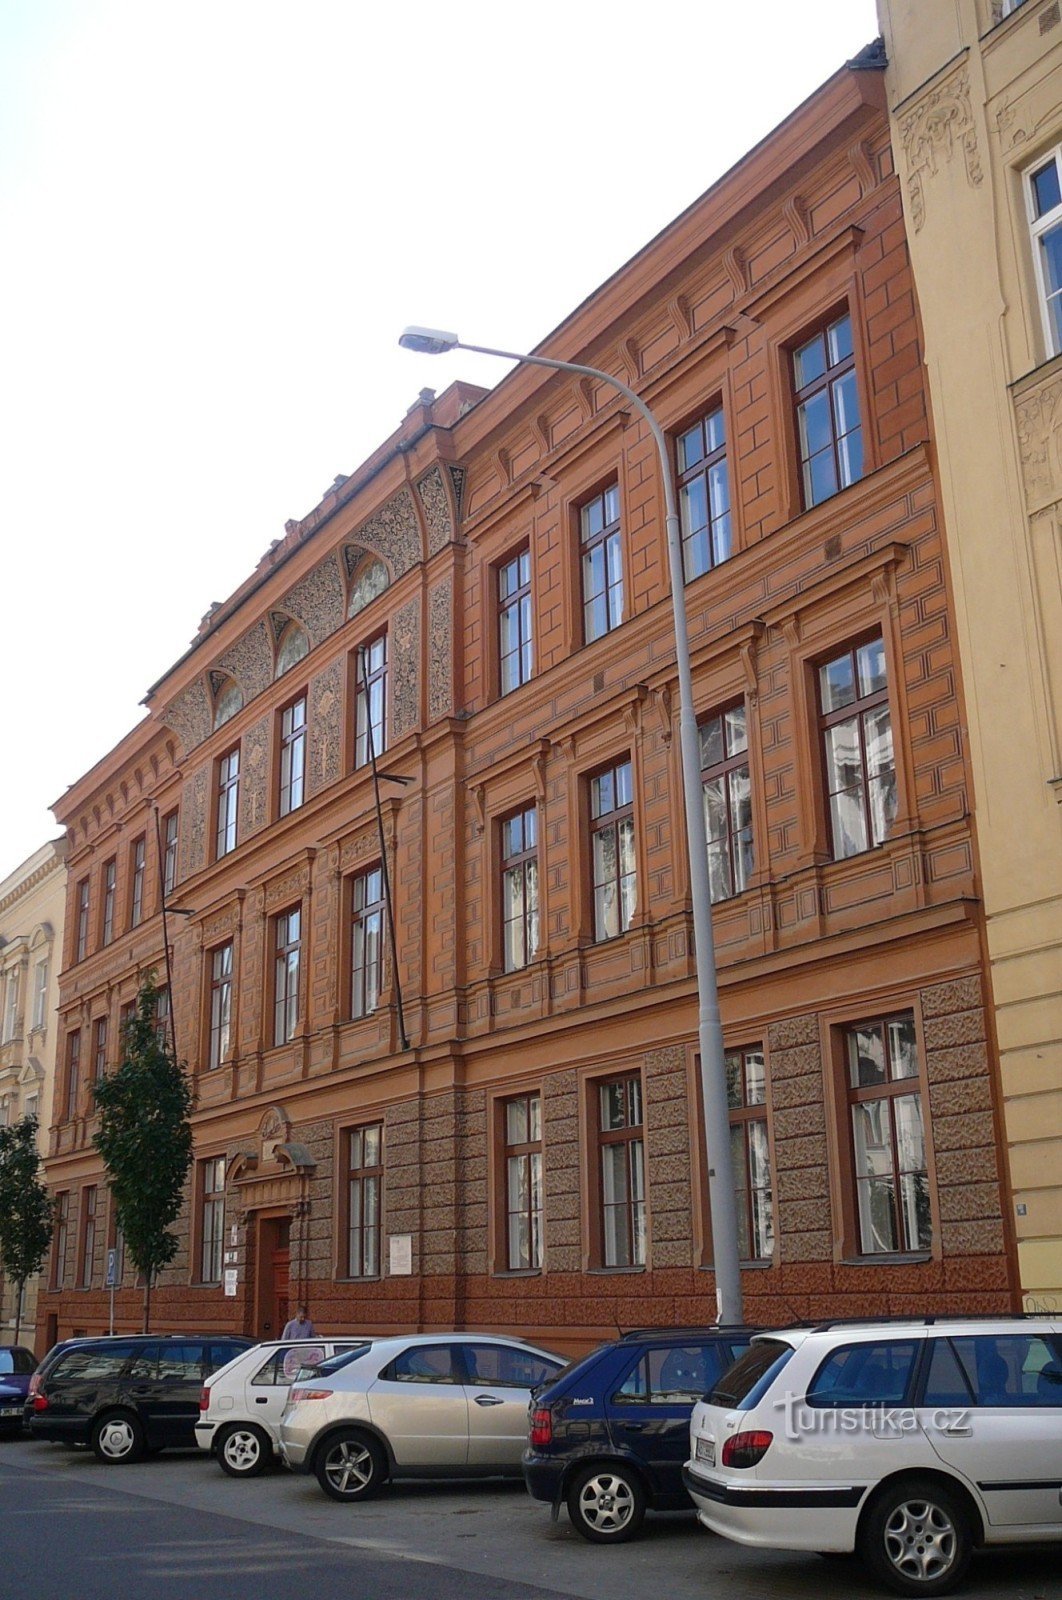 Școala de la Jaselská 7 a arhitectului Antonín Terbich